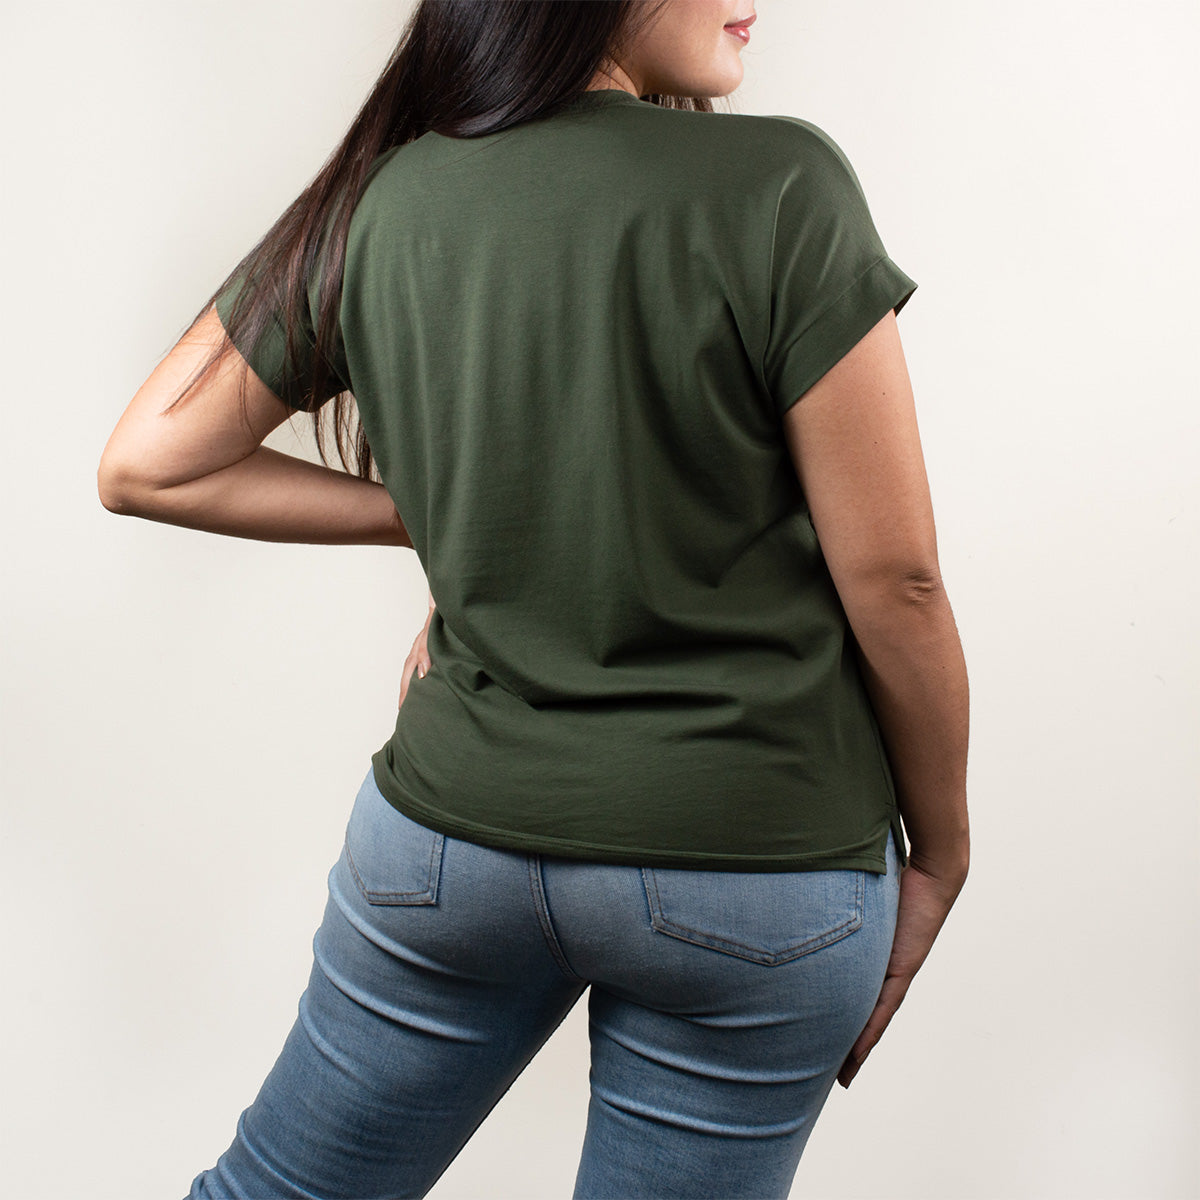 Camiseta básica color verde militar con estampado animal print